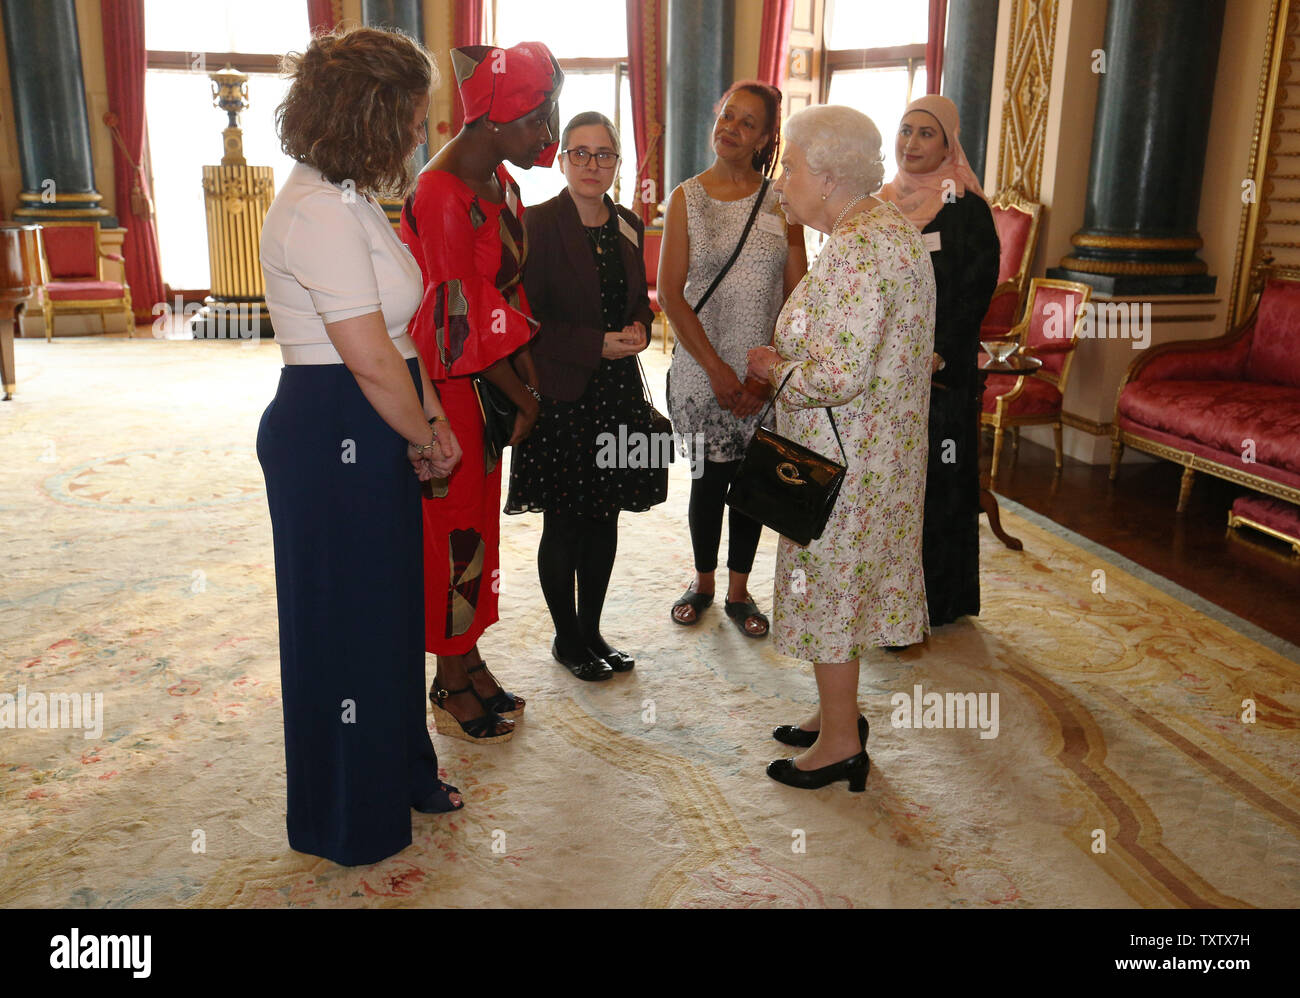 La reine Elizabeth II salue (de gauche à droite) Anna Dyson, Valentine, Emma Nkoyo Holton, Rachael Cox, et Nighat Khan lors d'une réception à Buckingham Palace, Londres, pour célébrer le travail de UK foi et croyance des groupes pour amener les collectivités locales ensemble. Banque D'Images